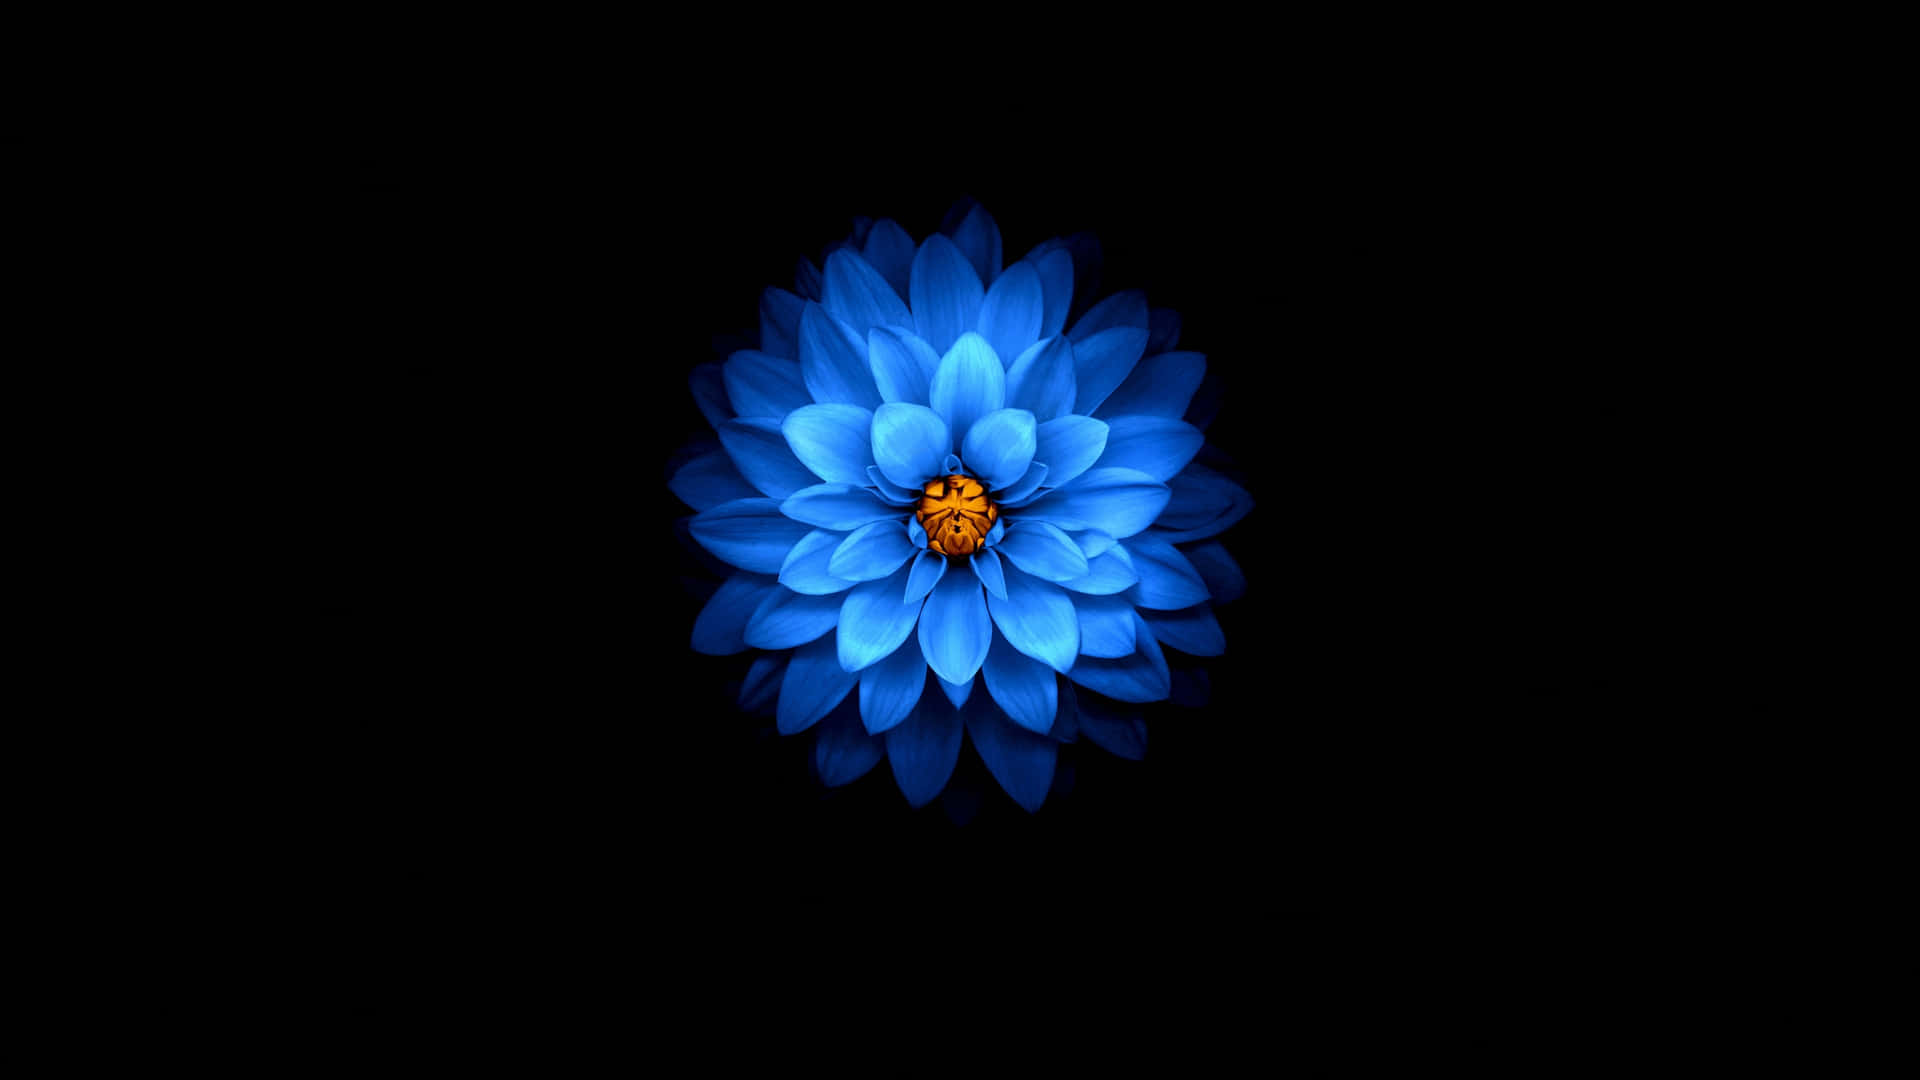 Blue Flower 1440p Amoled Background